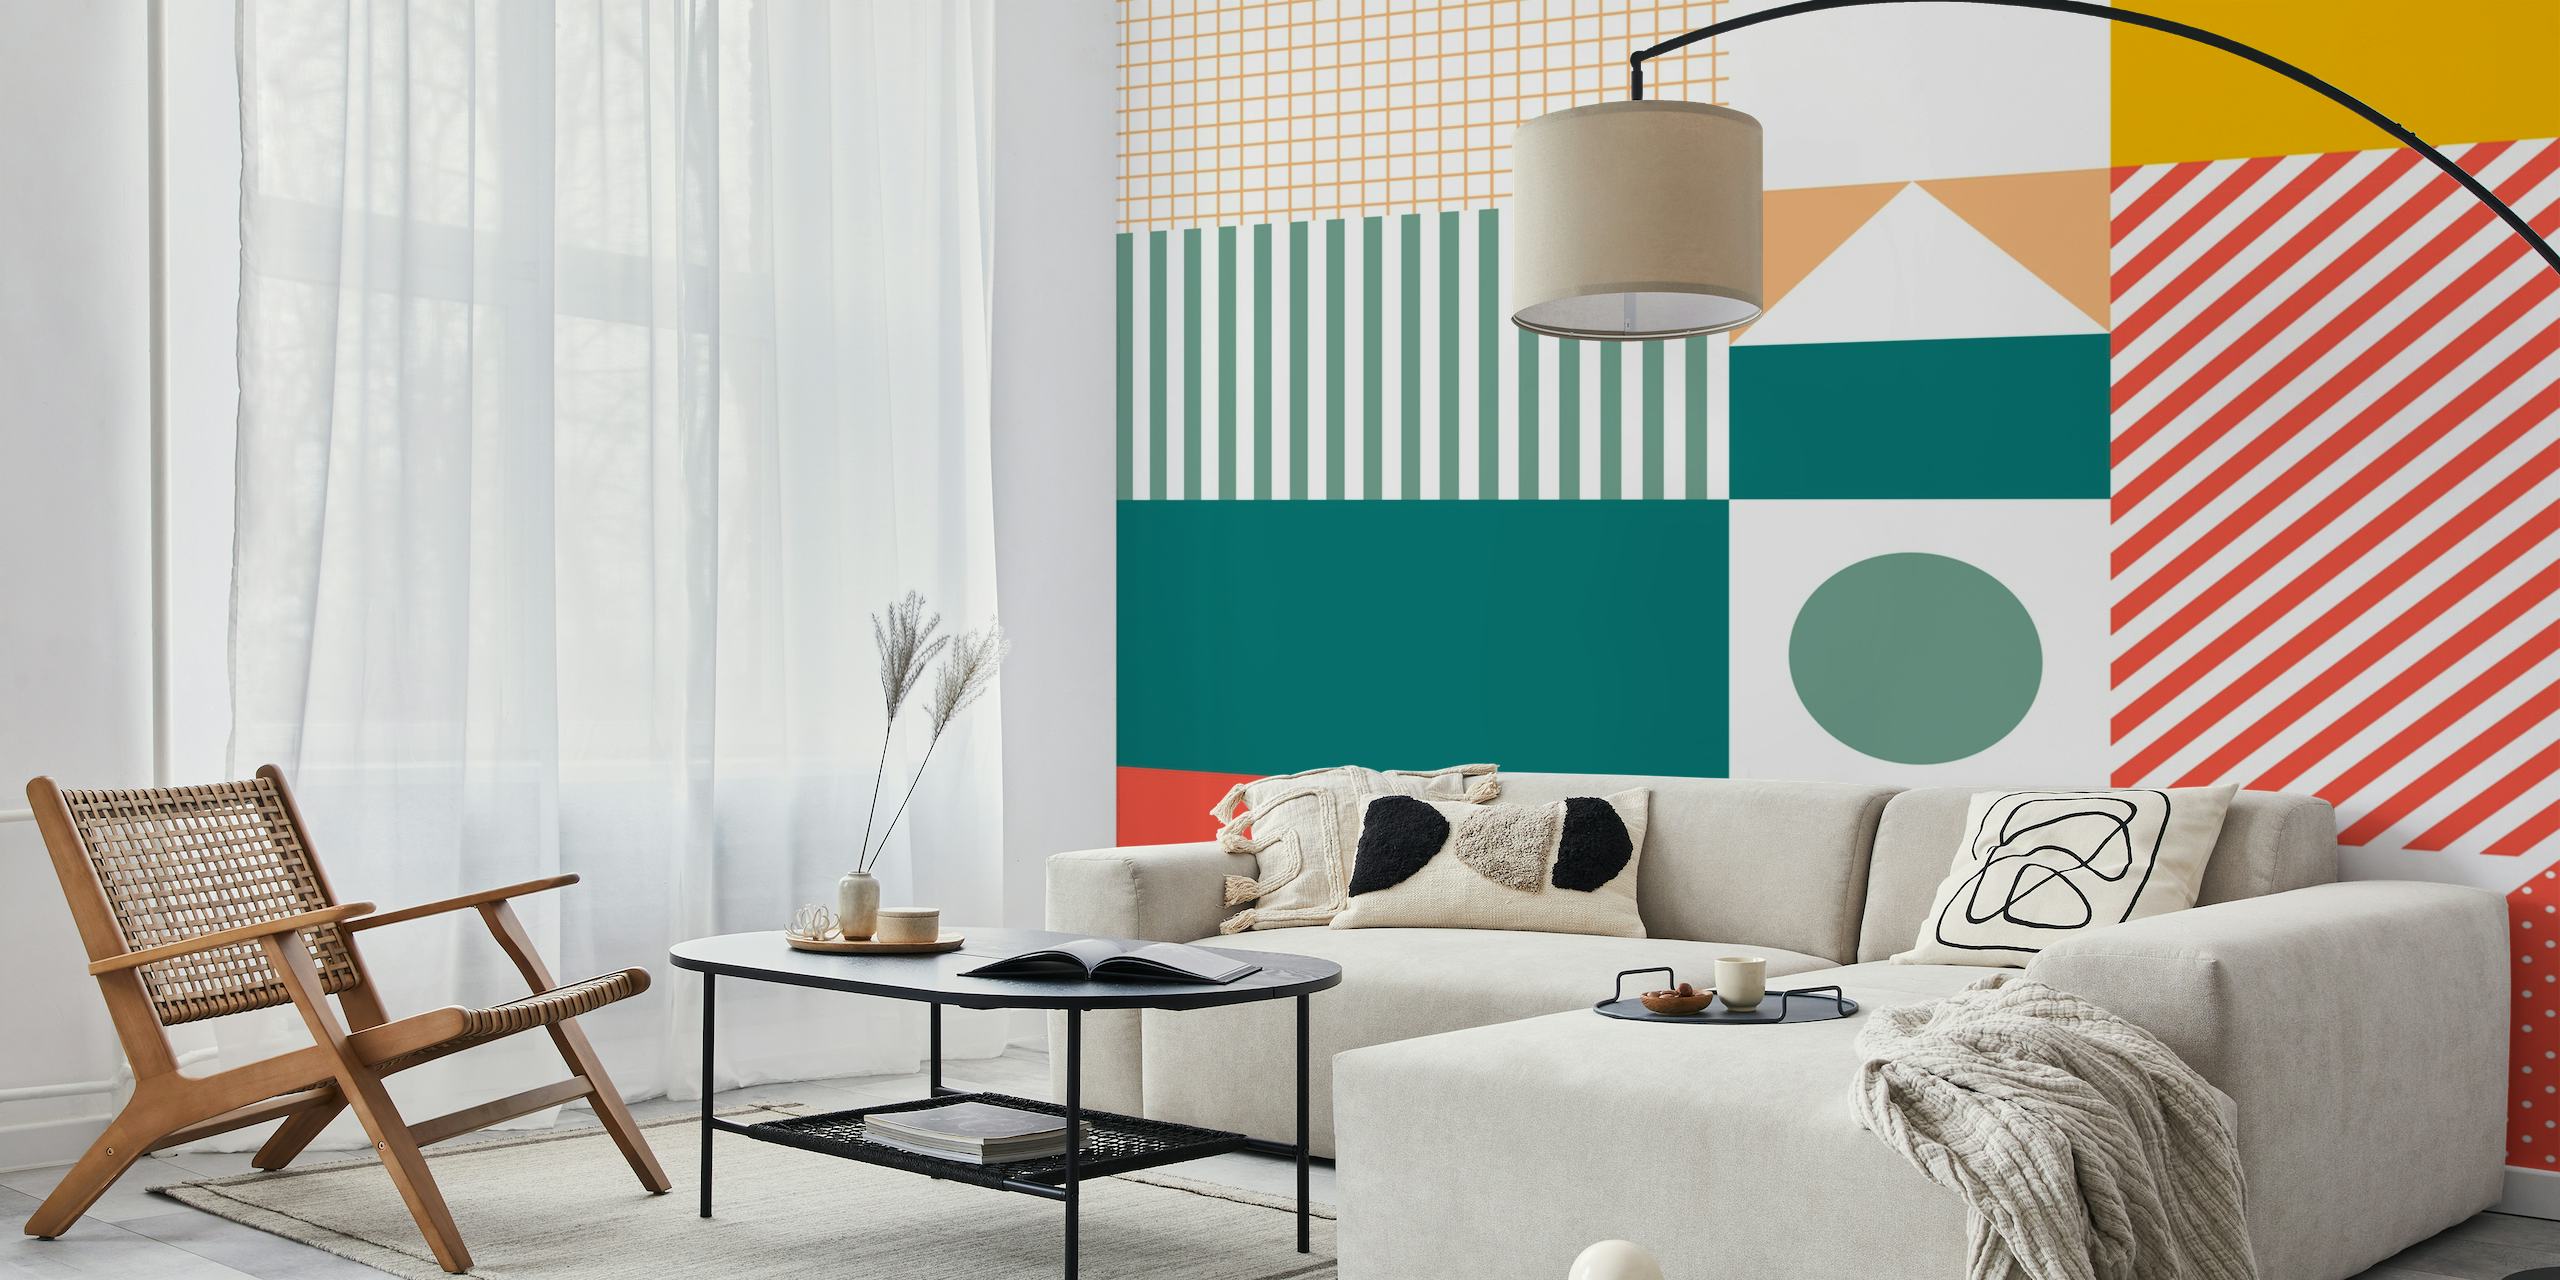 Fotomural vinílico de parede com padrões geométricos coloridos com uma mistura de quadrados xadrez e listras em tons de tangerina, verde-azulado e pastel.